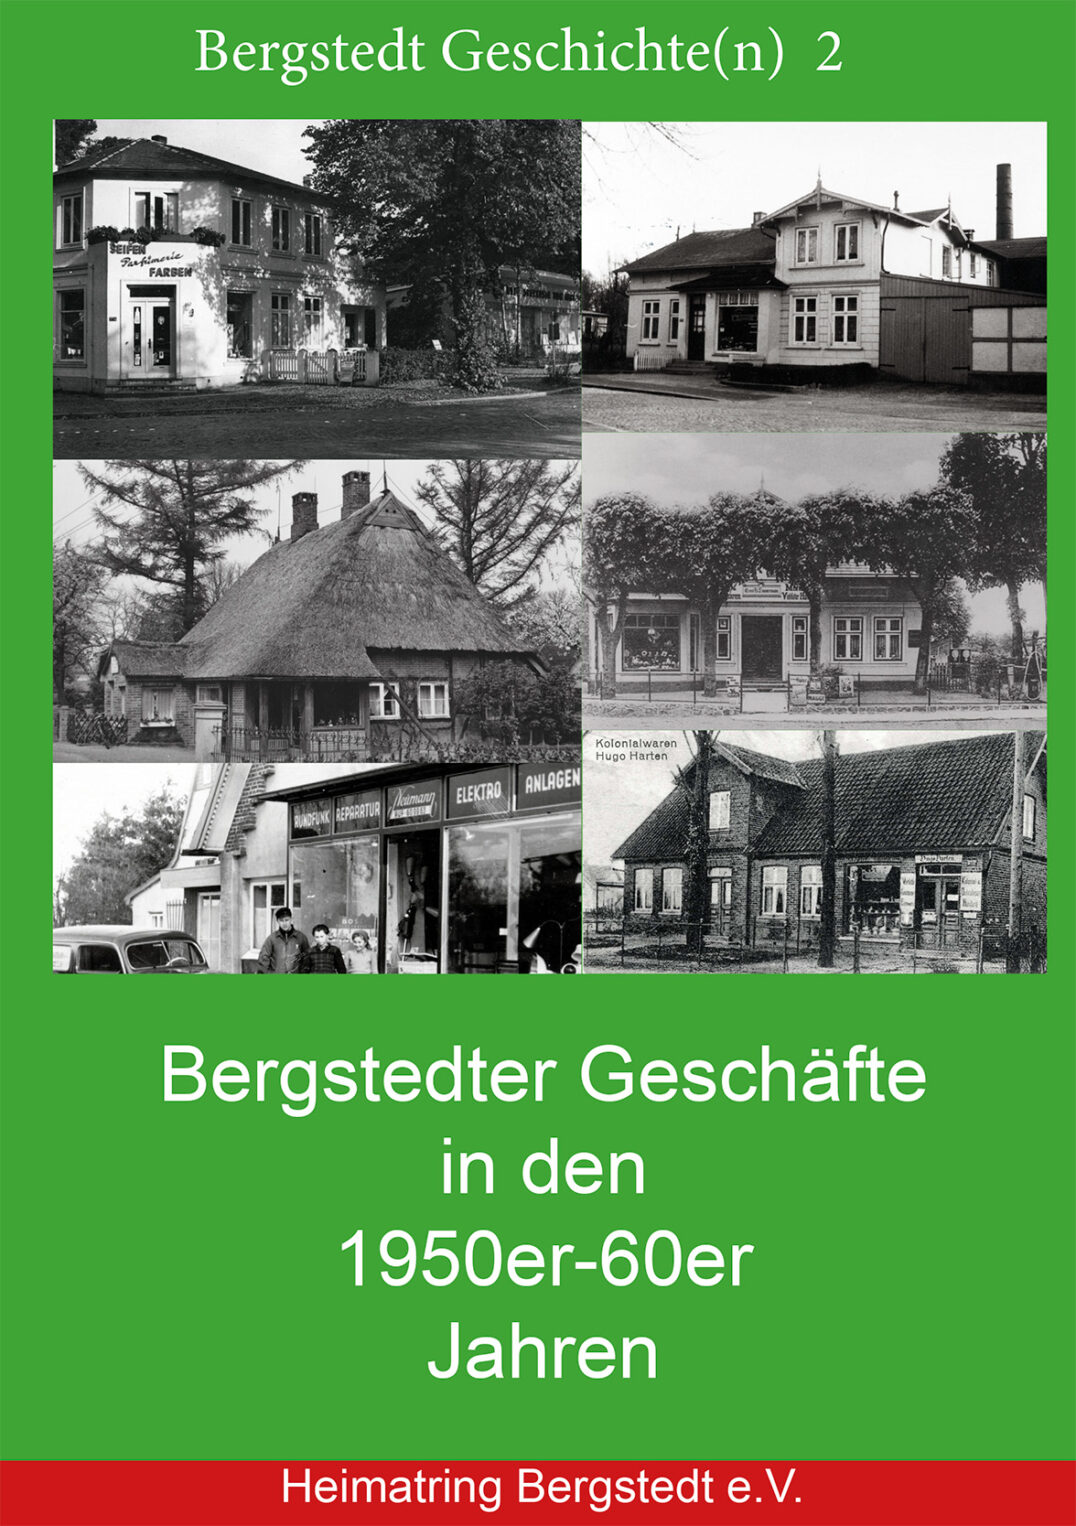 Bergstedter Geschichten 2